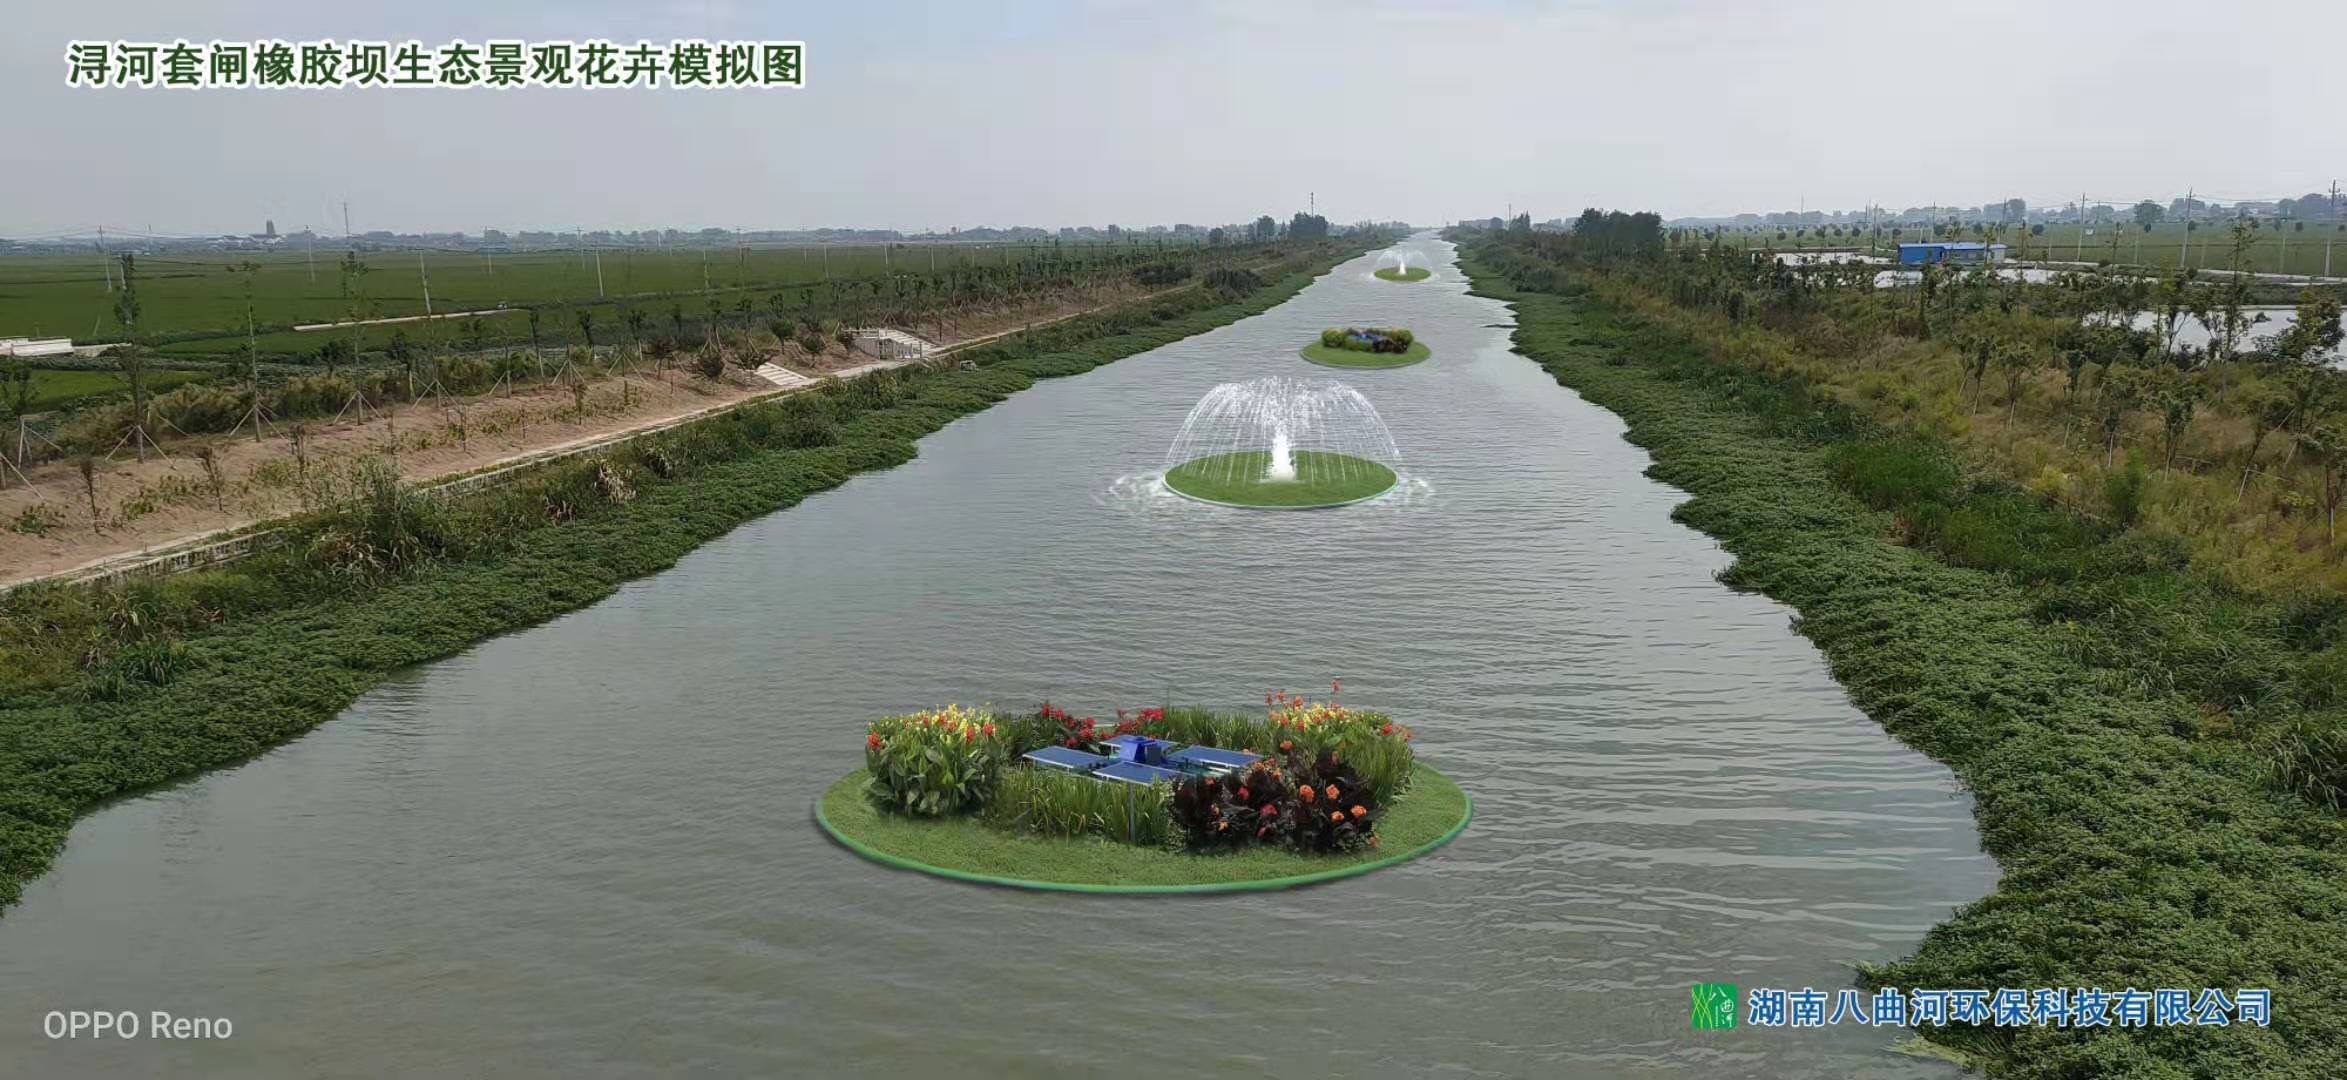 湖南八曲河环保科技有限公司,水上生态种植设备,污水净化原理,湖南水环境治理公司